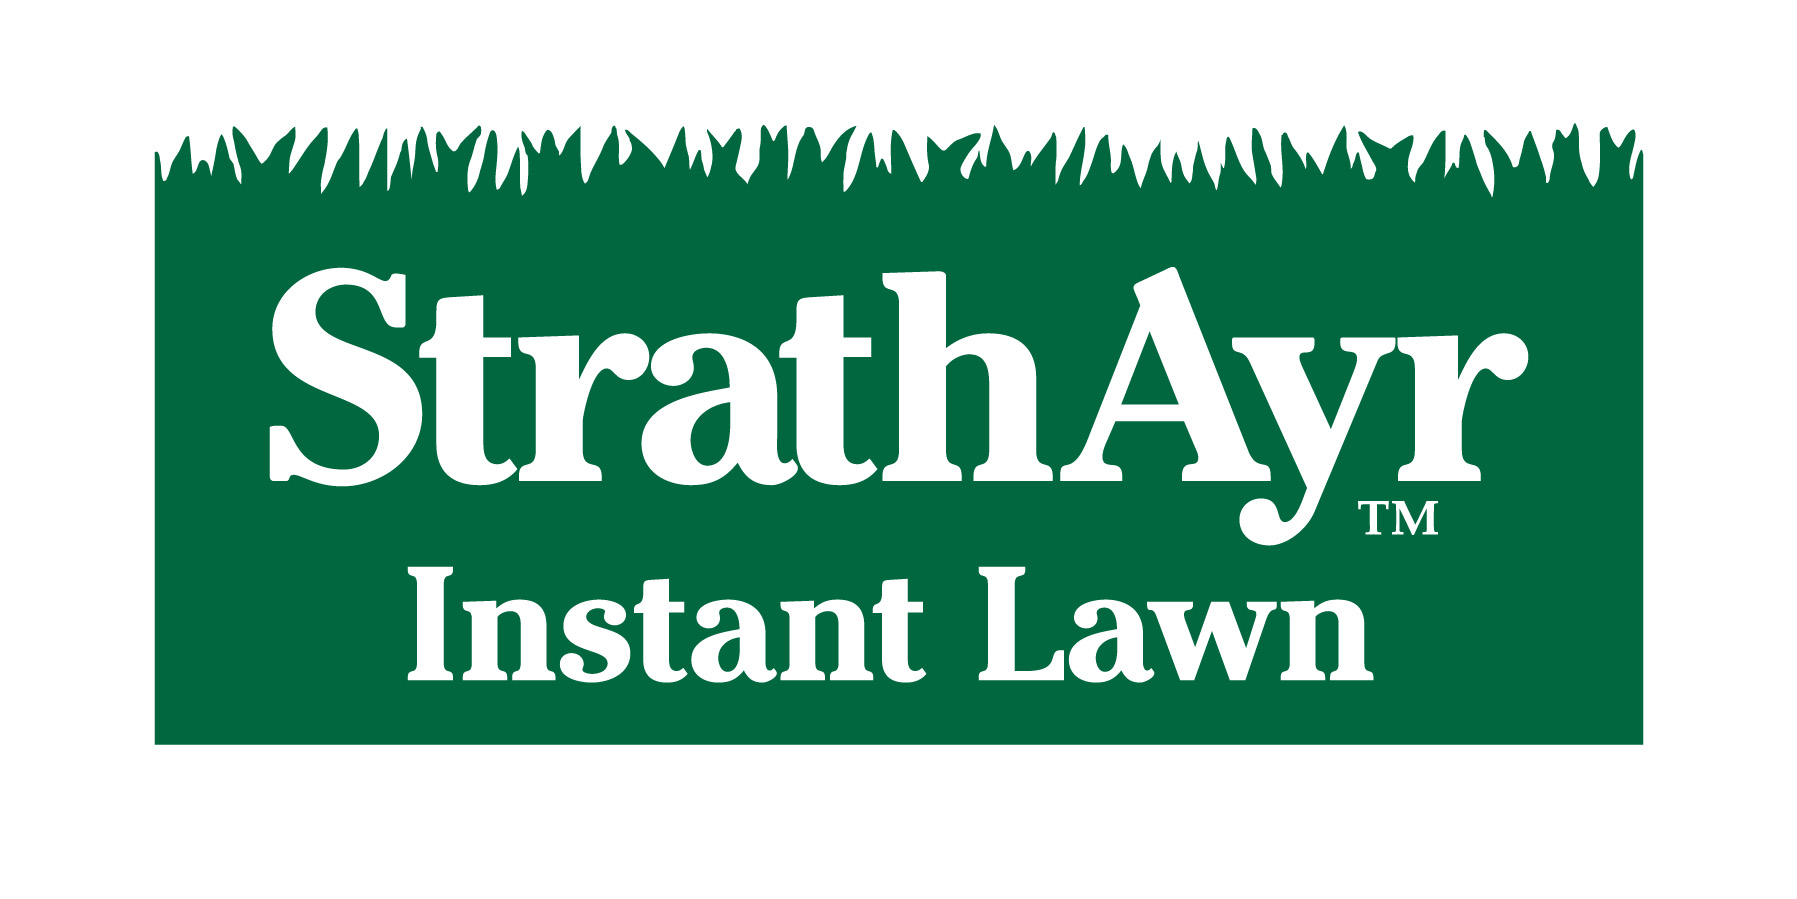 StrathAyr Instant Lawn logo